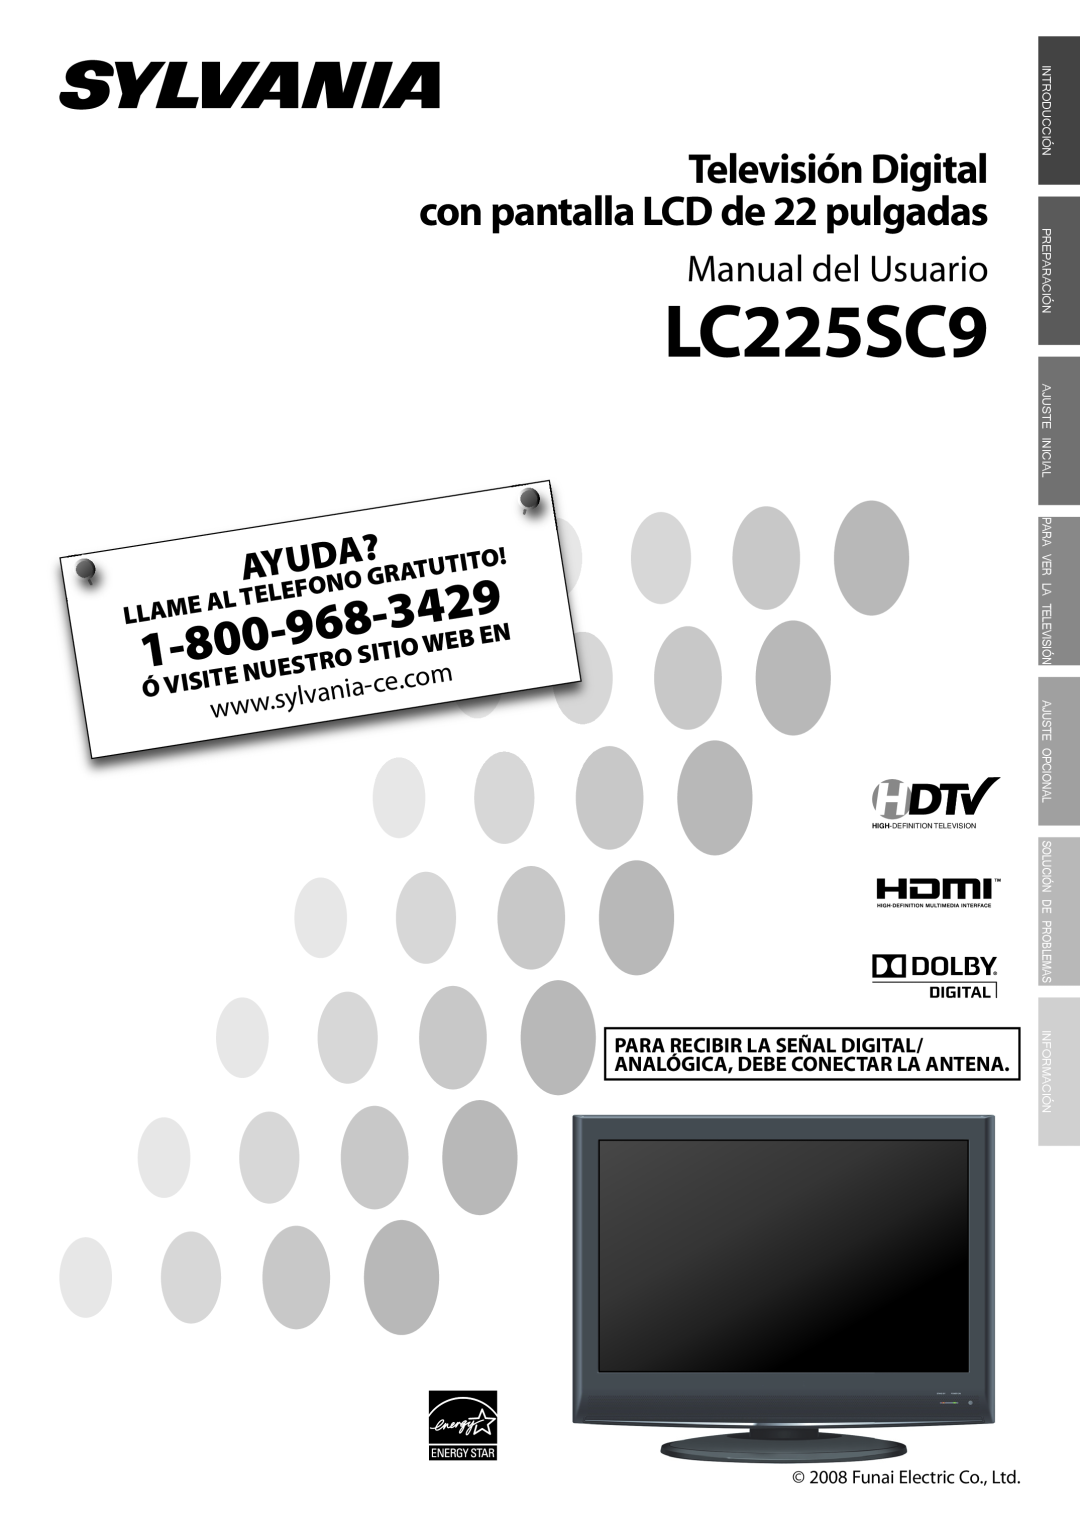 Sylvania LC225SC9 Tutito, Sitio, 3429, Manual del Usuario, Televisión Digital con pantalla LCD de 22 pulgadas, Ayuda? 